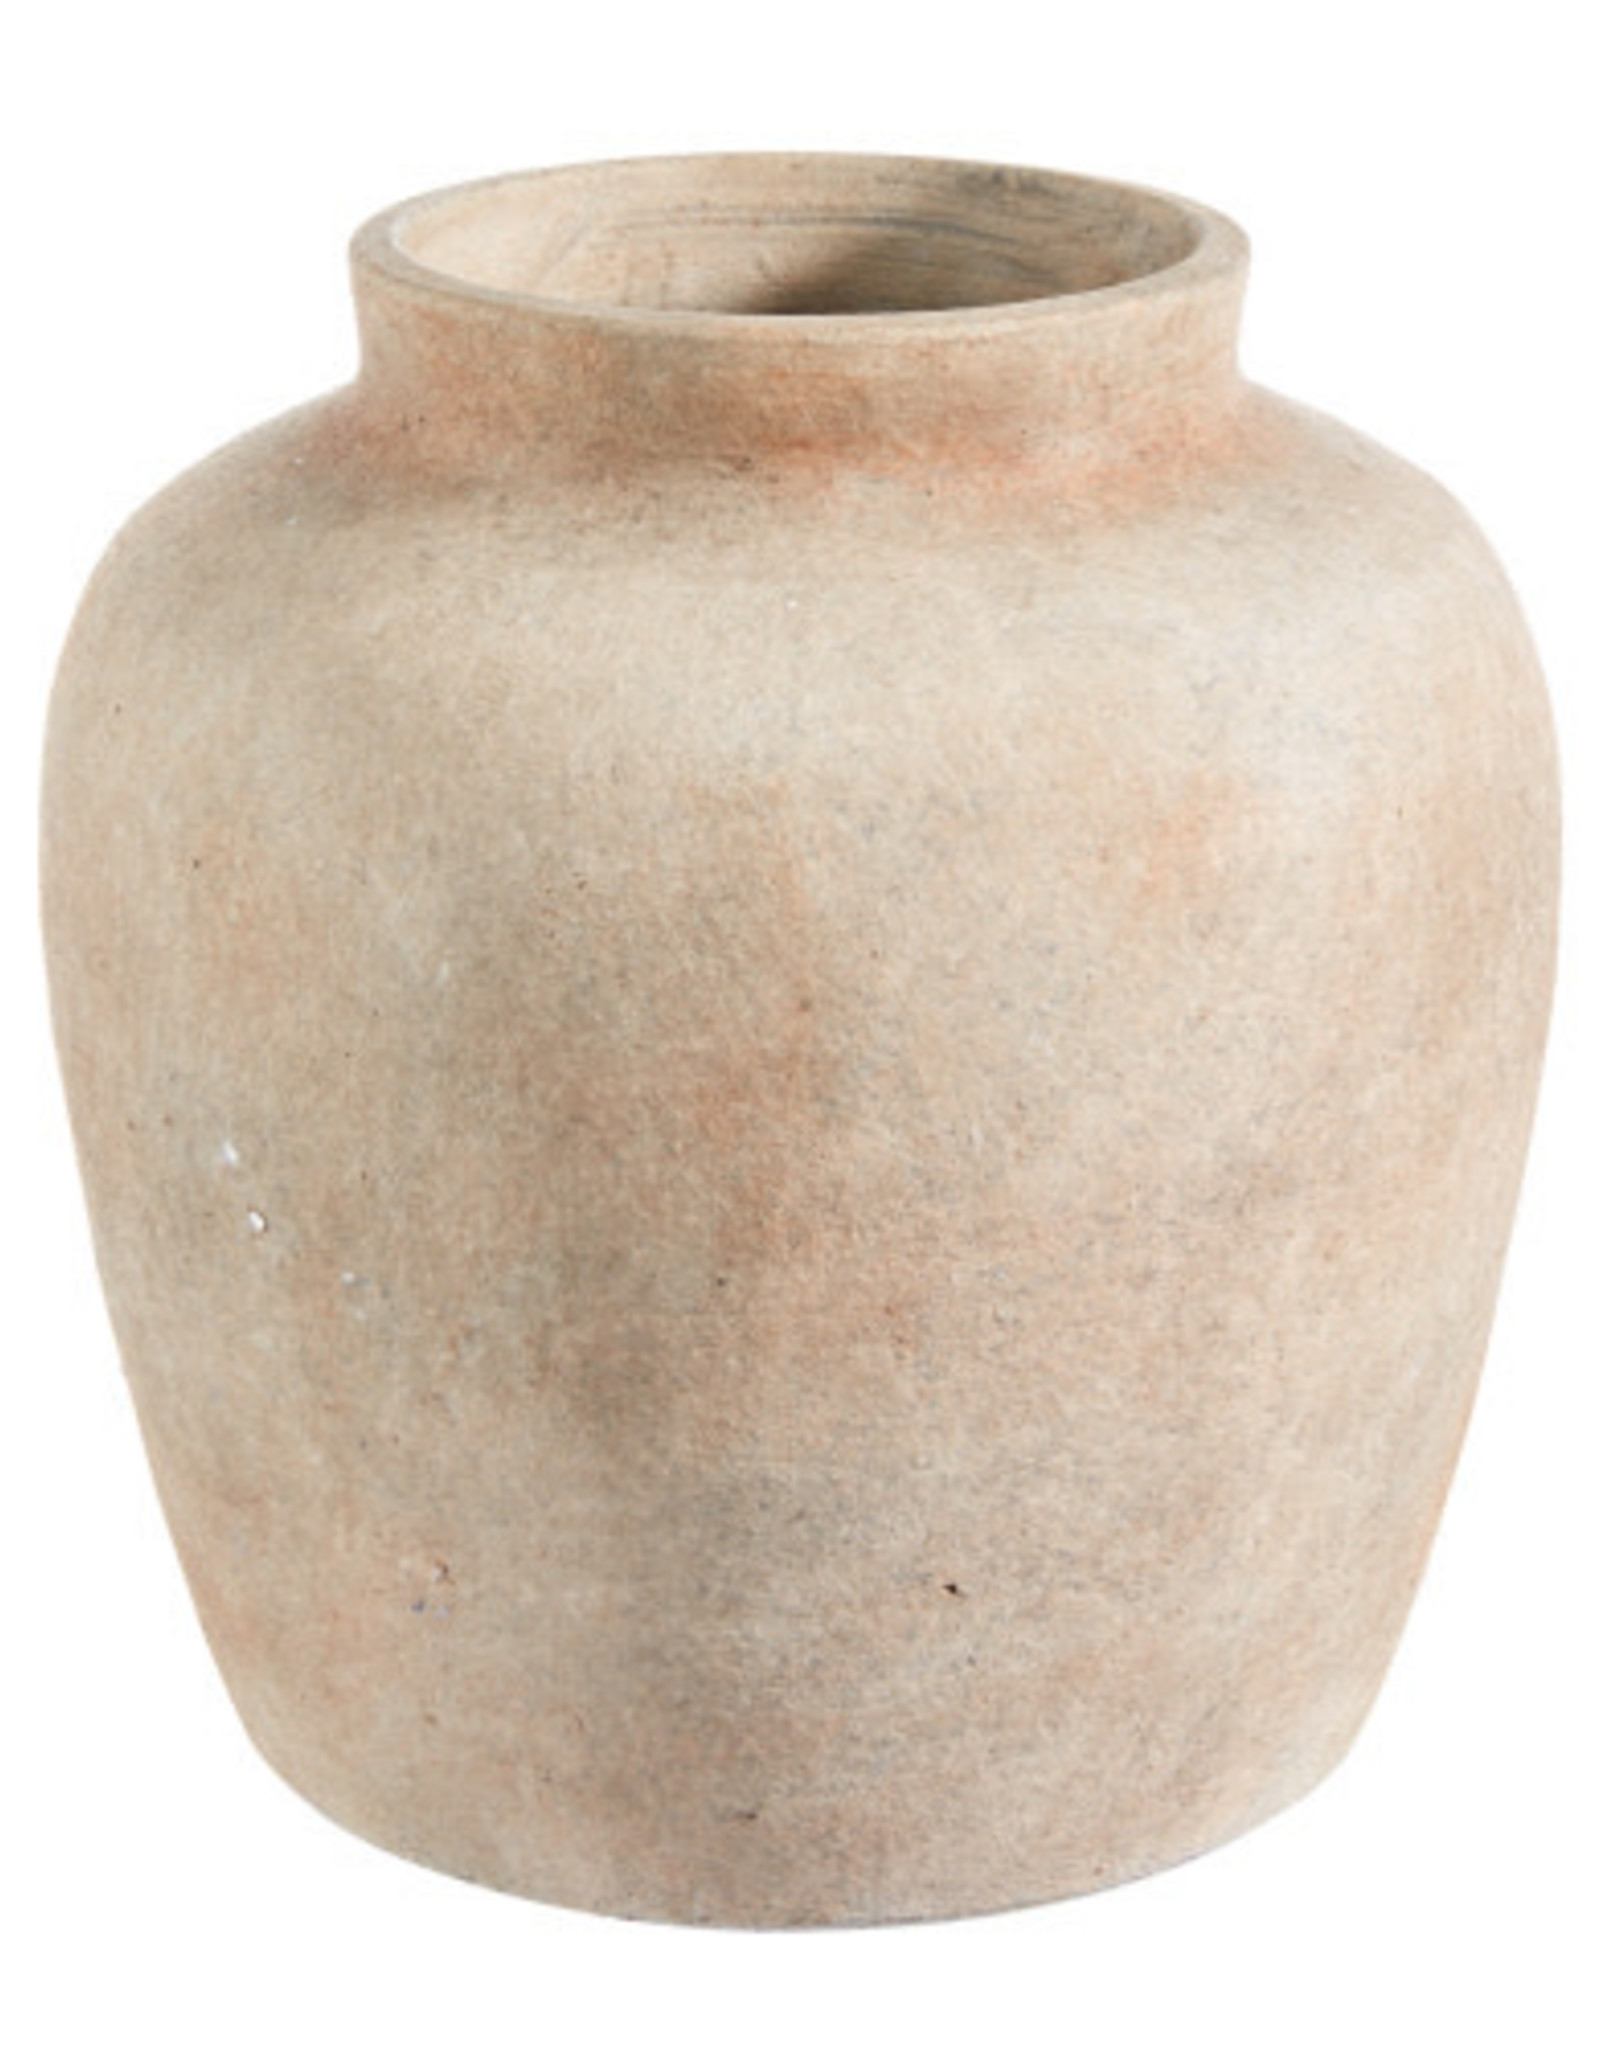 7.5" Terracotta Vase